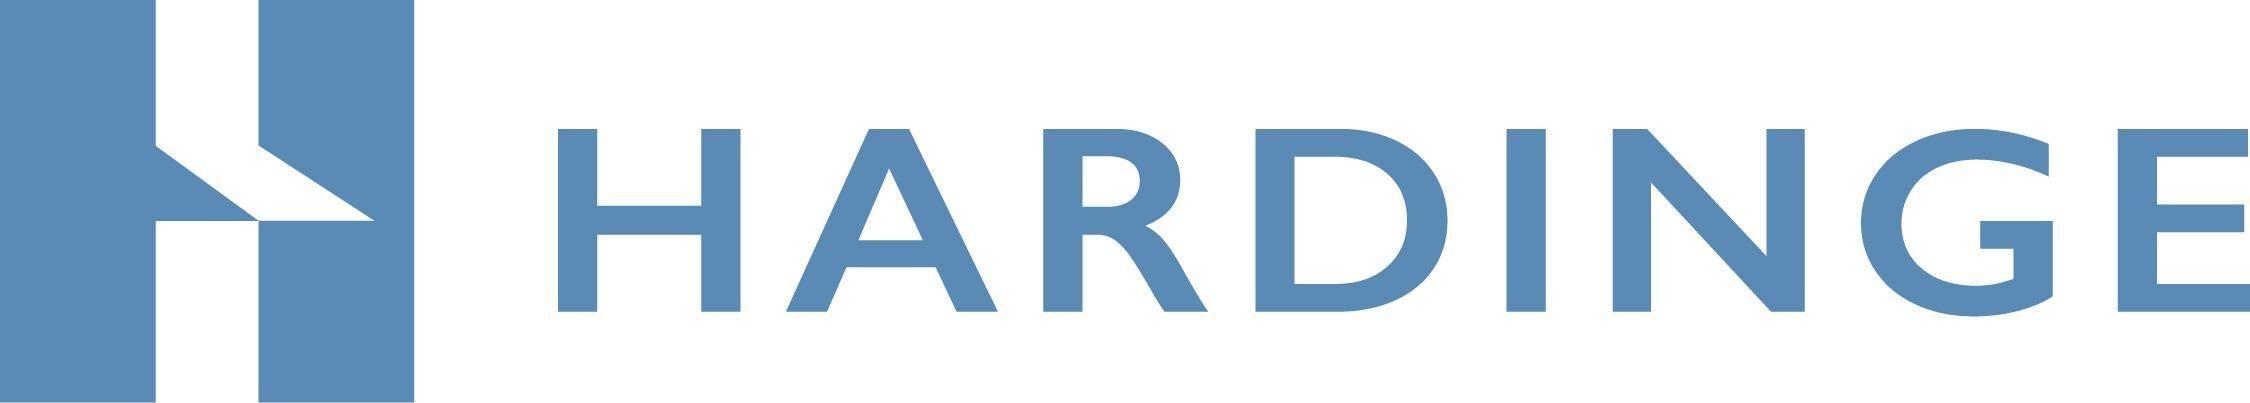 Hardinge Logo - Hardinge Competitors, Revenue and Employees - Owler Company Profile